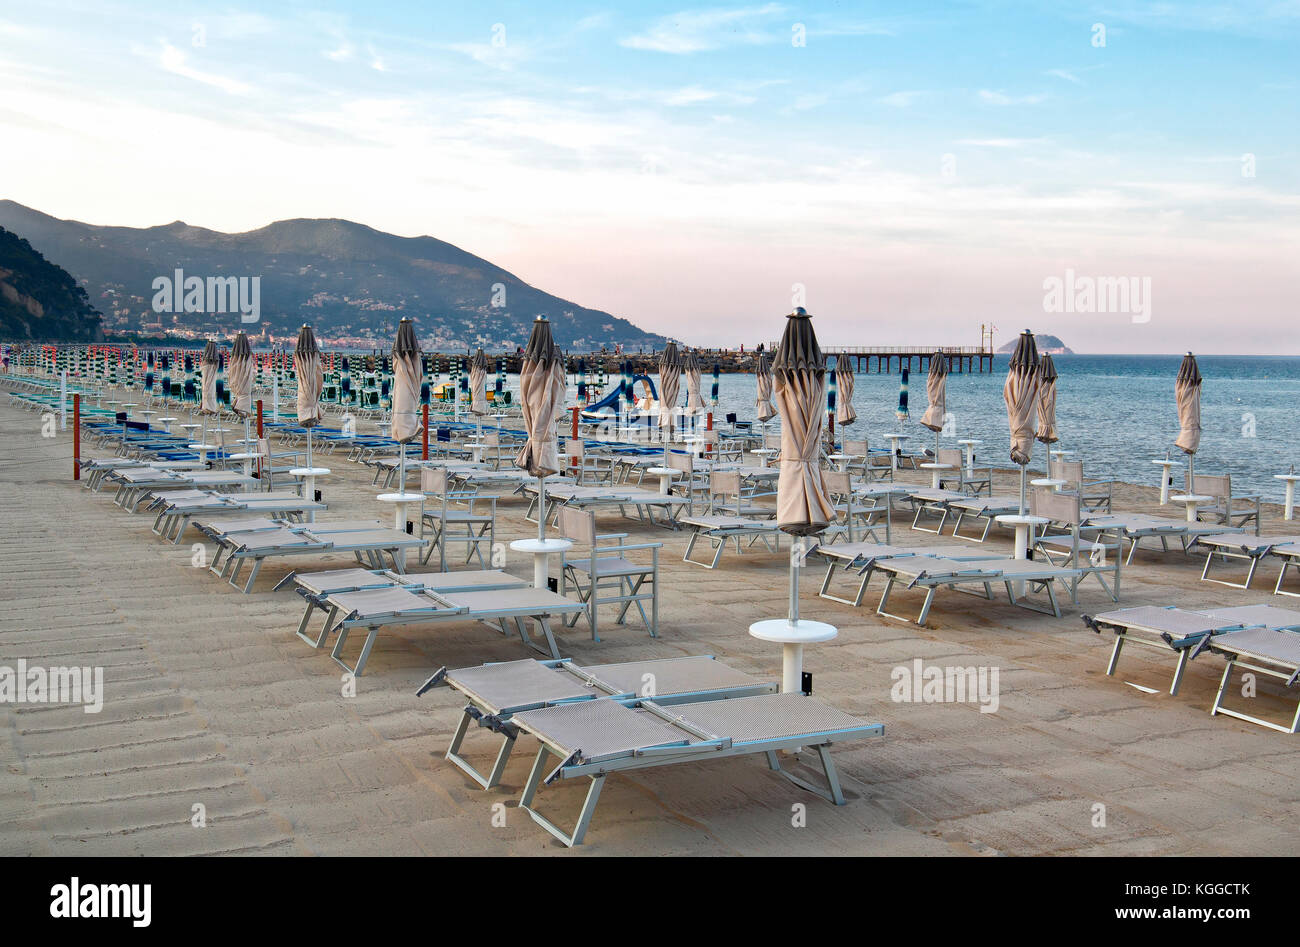 Bellissima spiaggia in Liguria nella città di Laigueglia ---------imperia, im, liguria, Italia - 17 giugno 2017: bella spiaggia ligure della Città di Laigueglia, Foto Stock